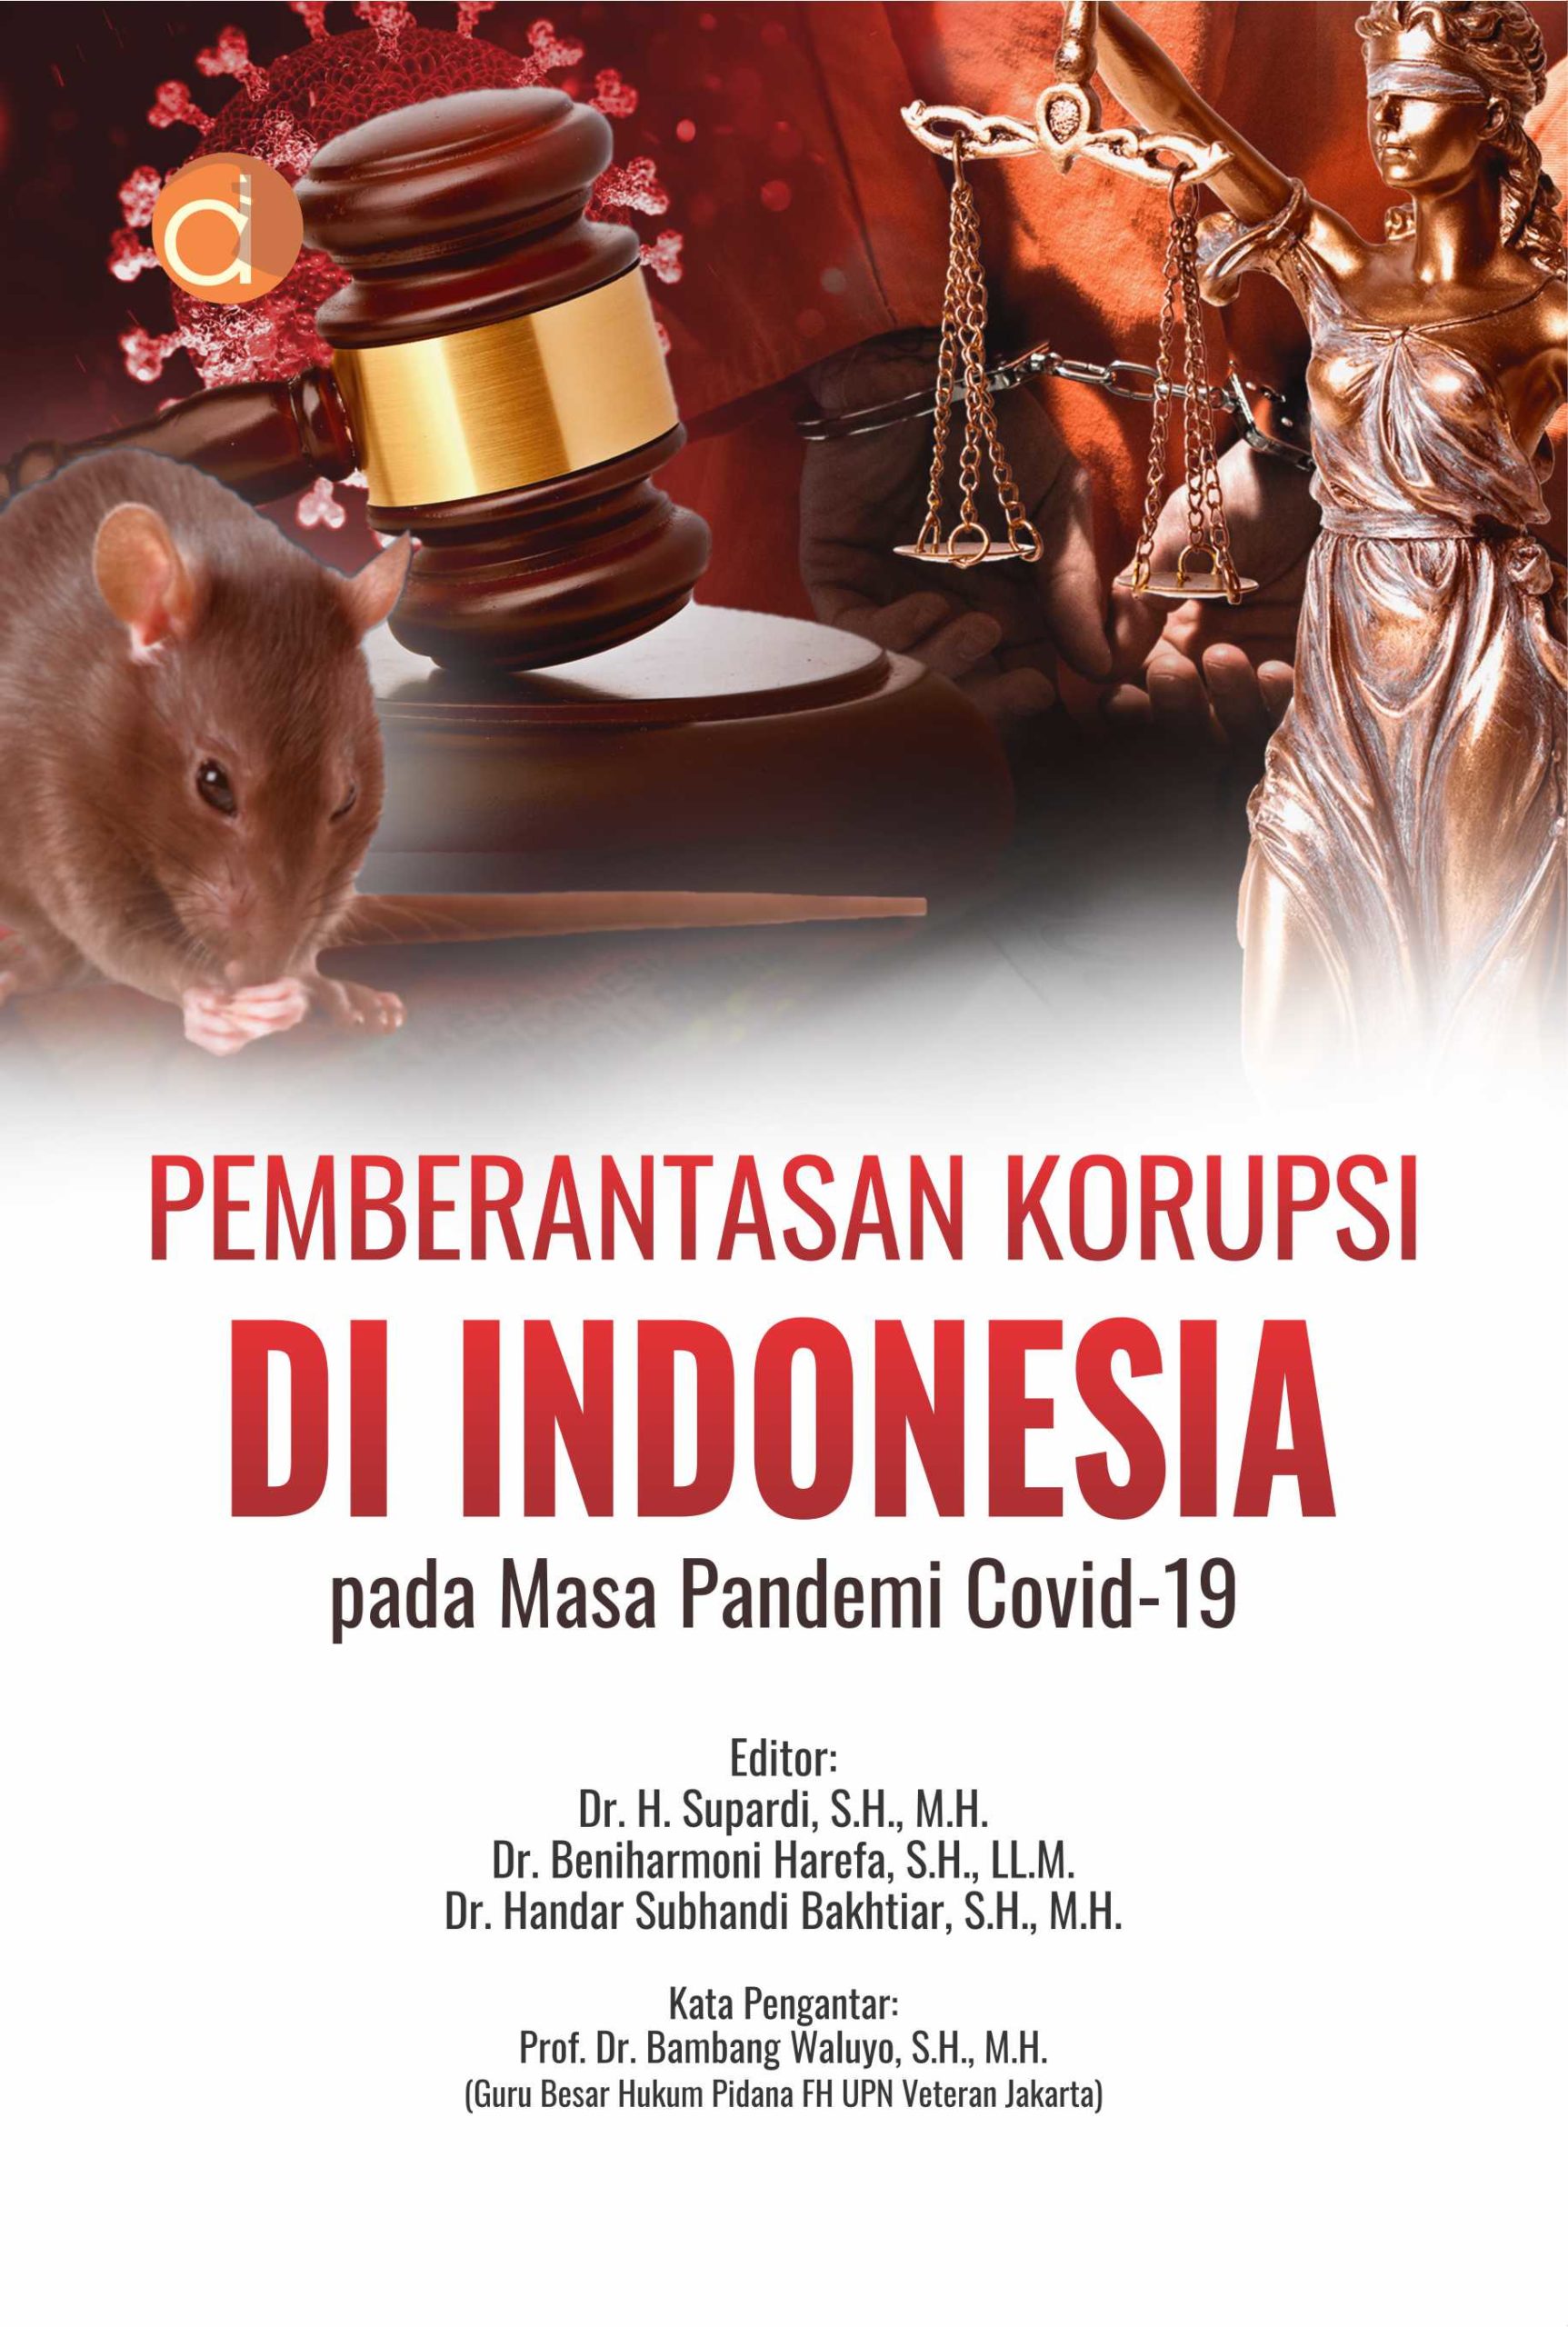 Pemberantasan korupsi di Indonesia pada masa pandemi COVID 19